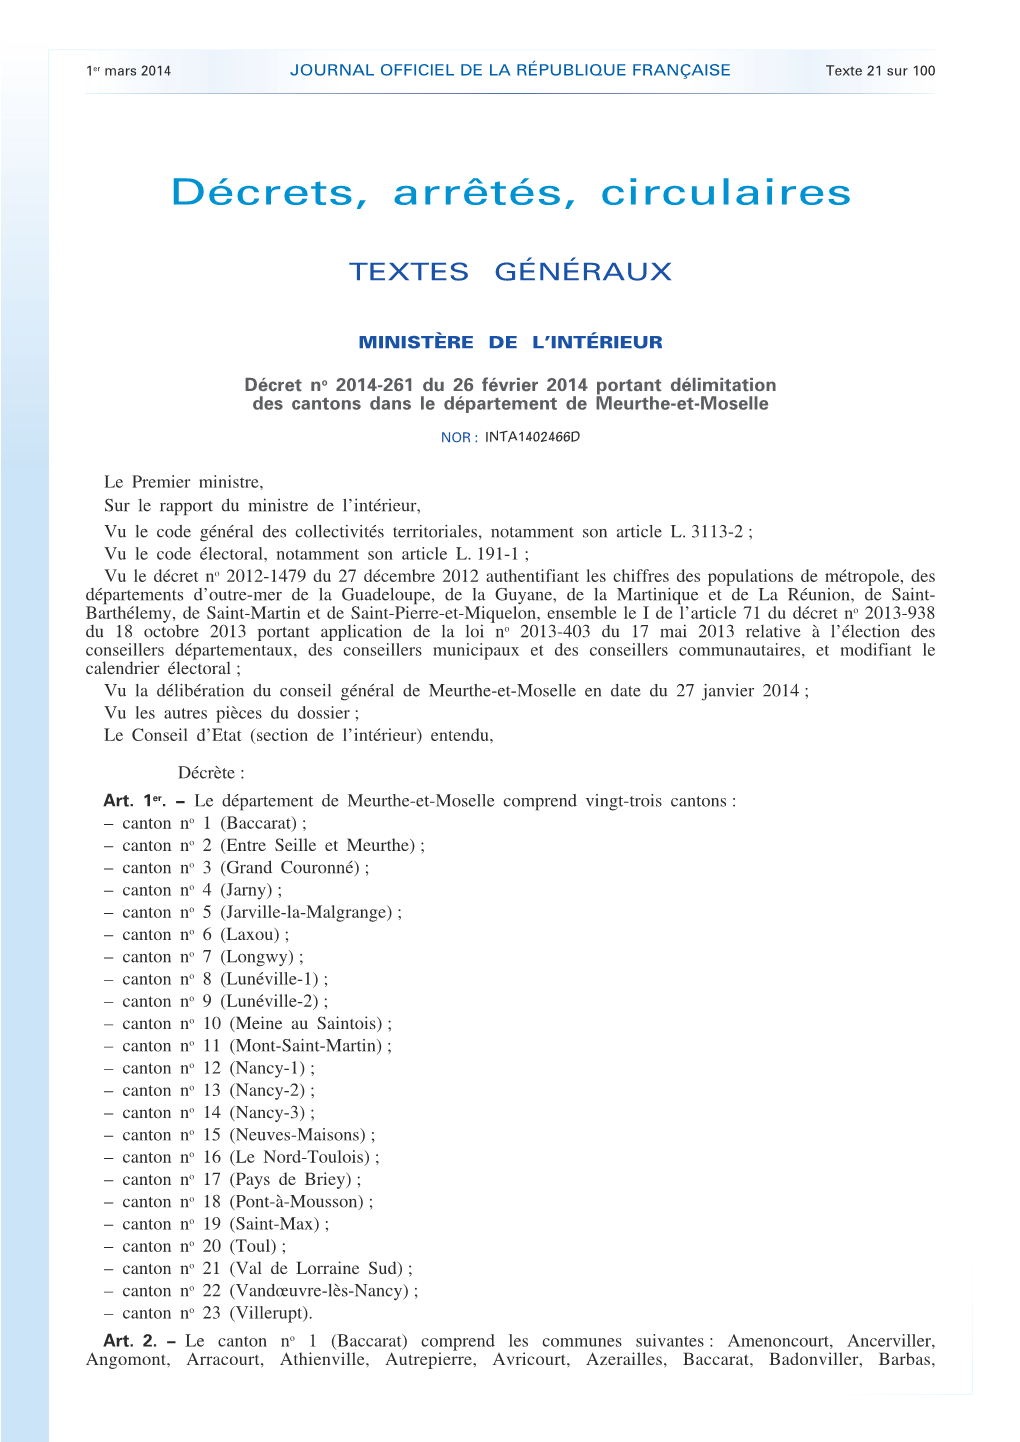 JOURNAL OFFICIEL DE LA RÉPUBLIQUE FRANÇAISE Texte 21 Sur 100